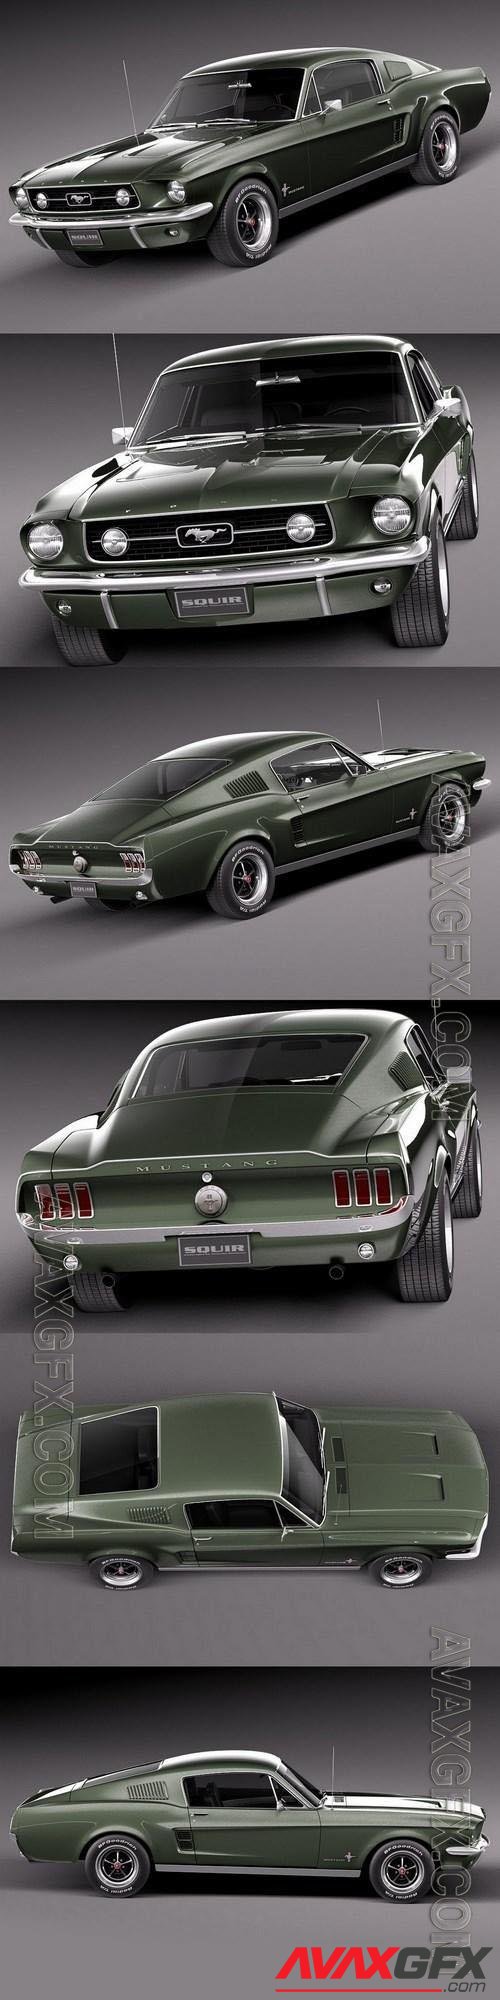 Ford Mustang 1967 Bullit - 3d model